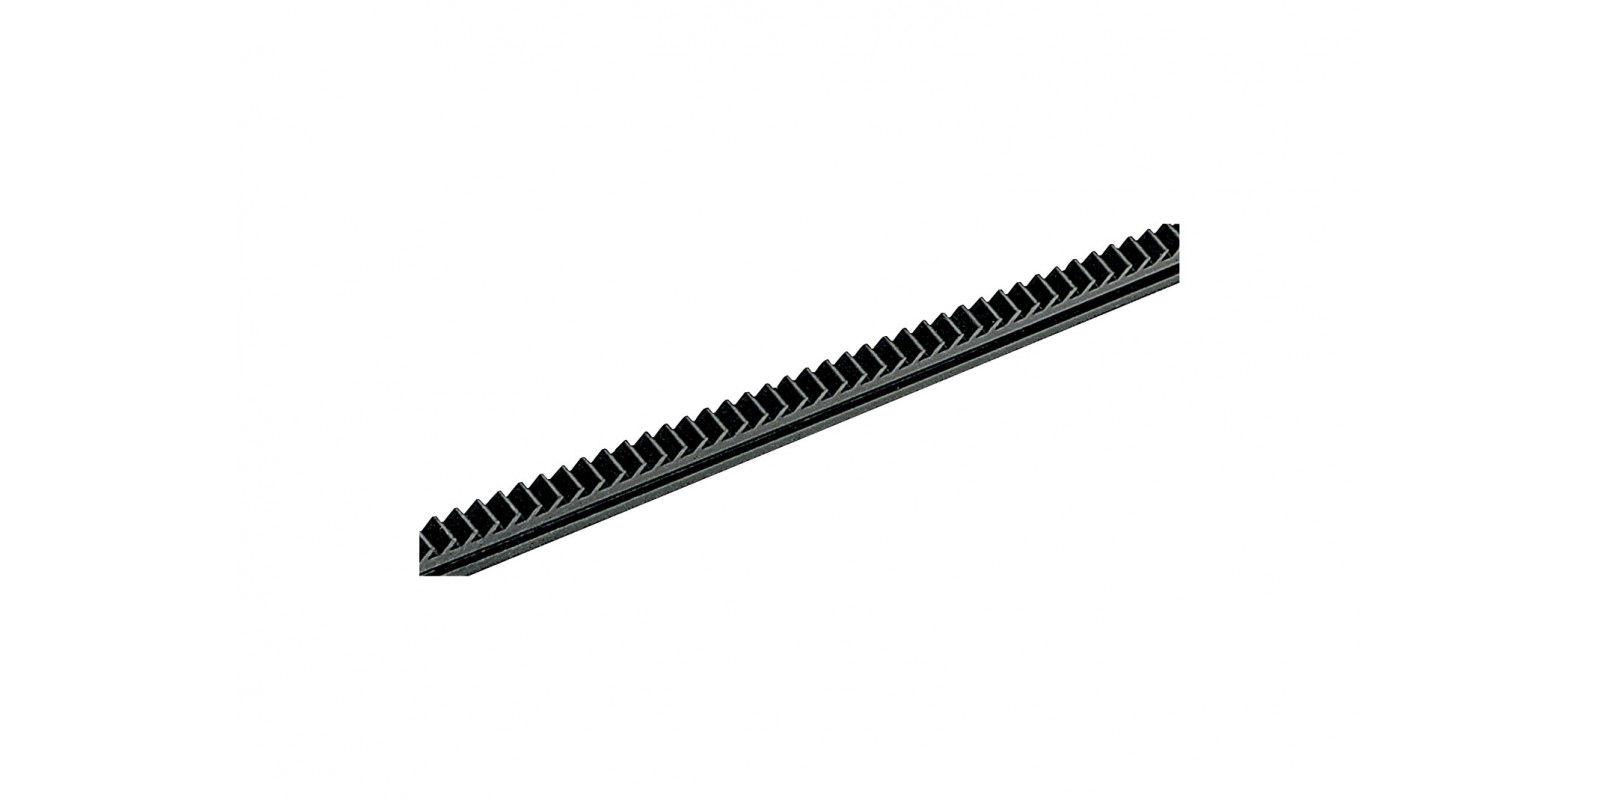 L10210  Rack Rails, 300 mm / 11-13/16“, 12 Pieces